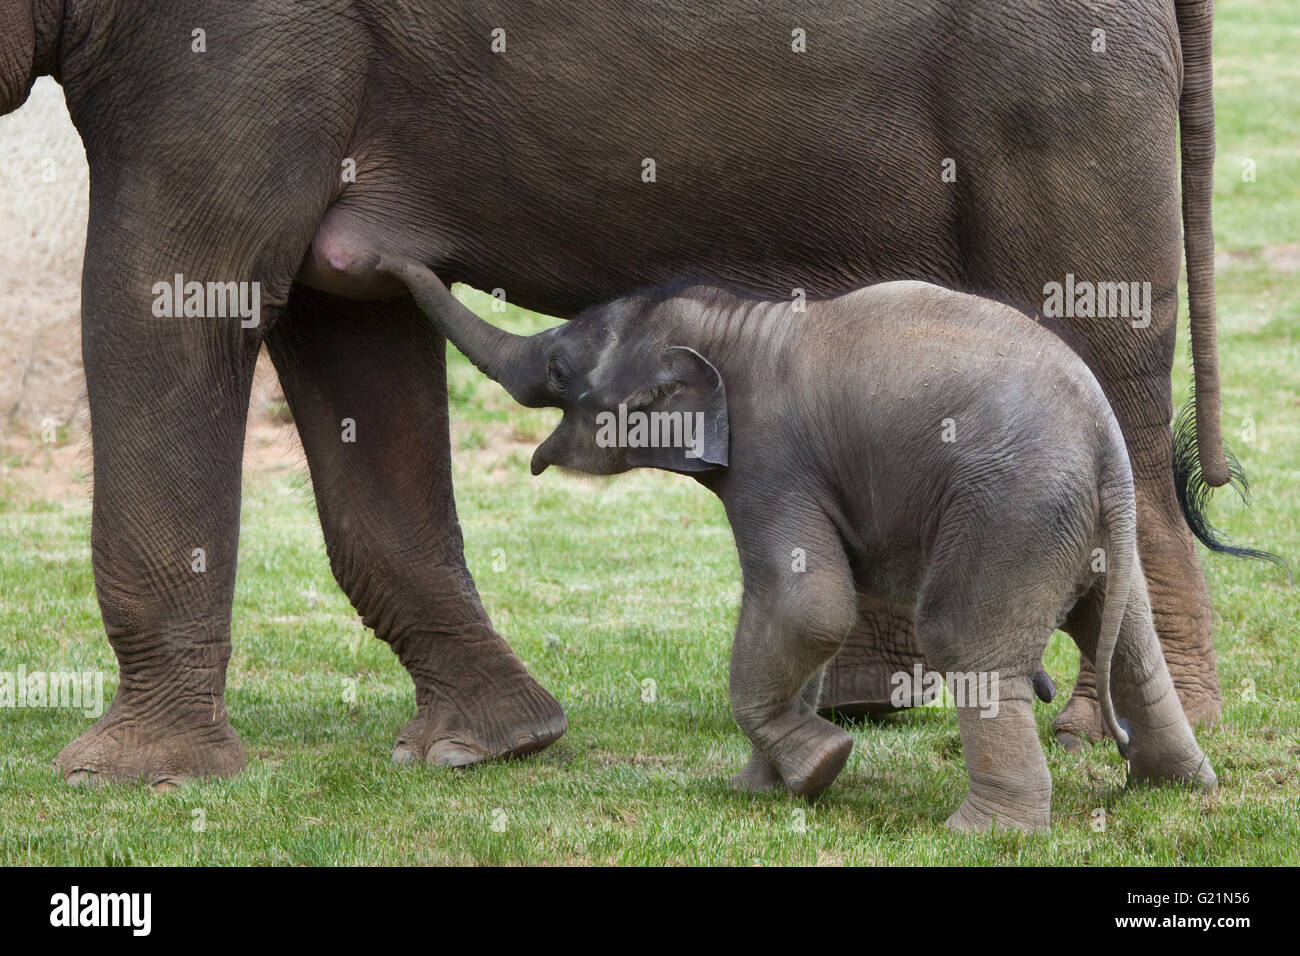 Uno-mes-viejo elefante indio (Elephas maximus indicus) denominada Maxmilian Janita con su madre en el Zoo de Praga, República Checa. Foto de stock